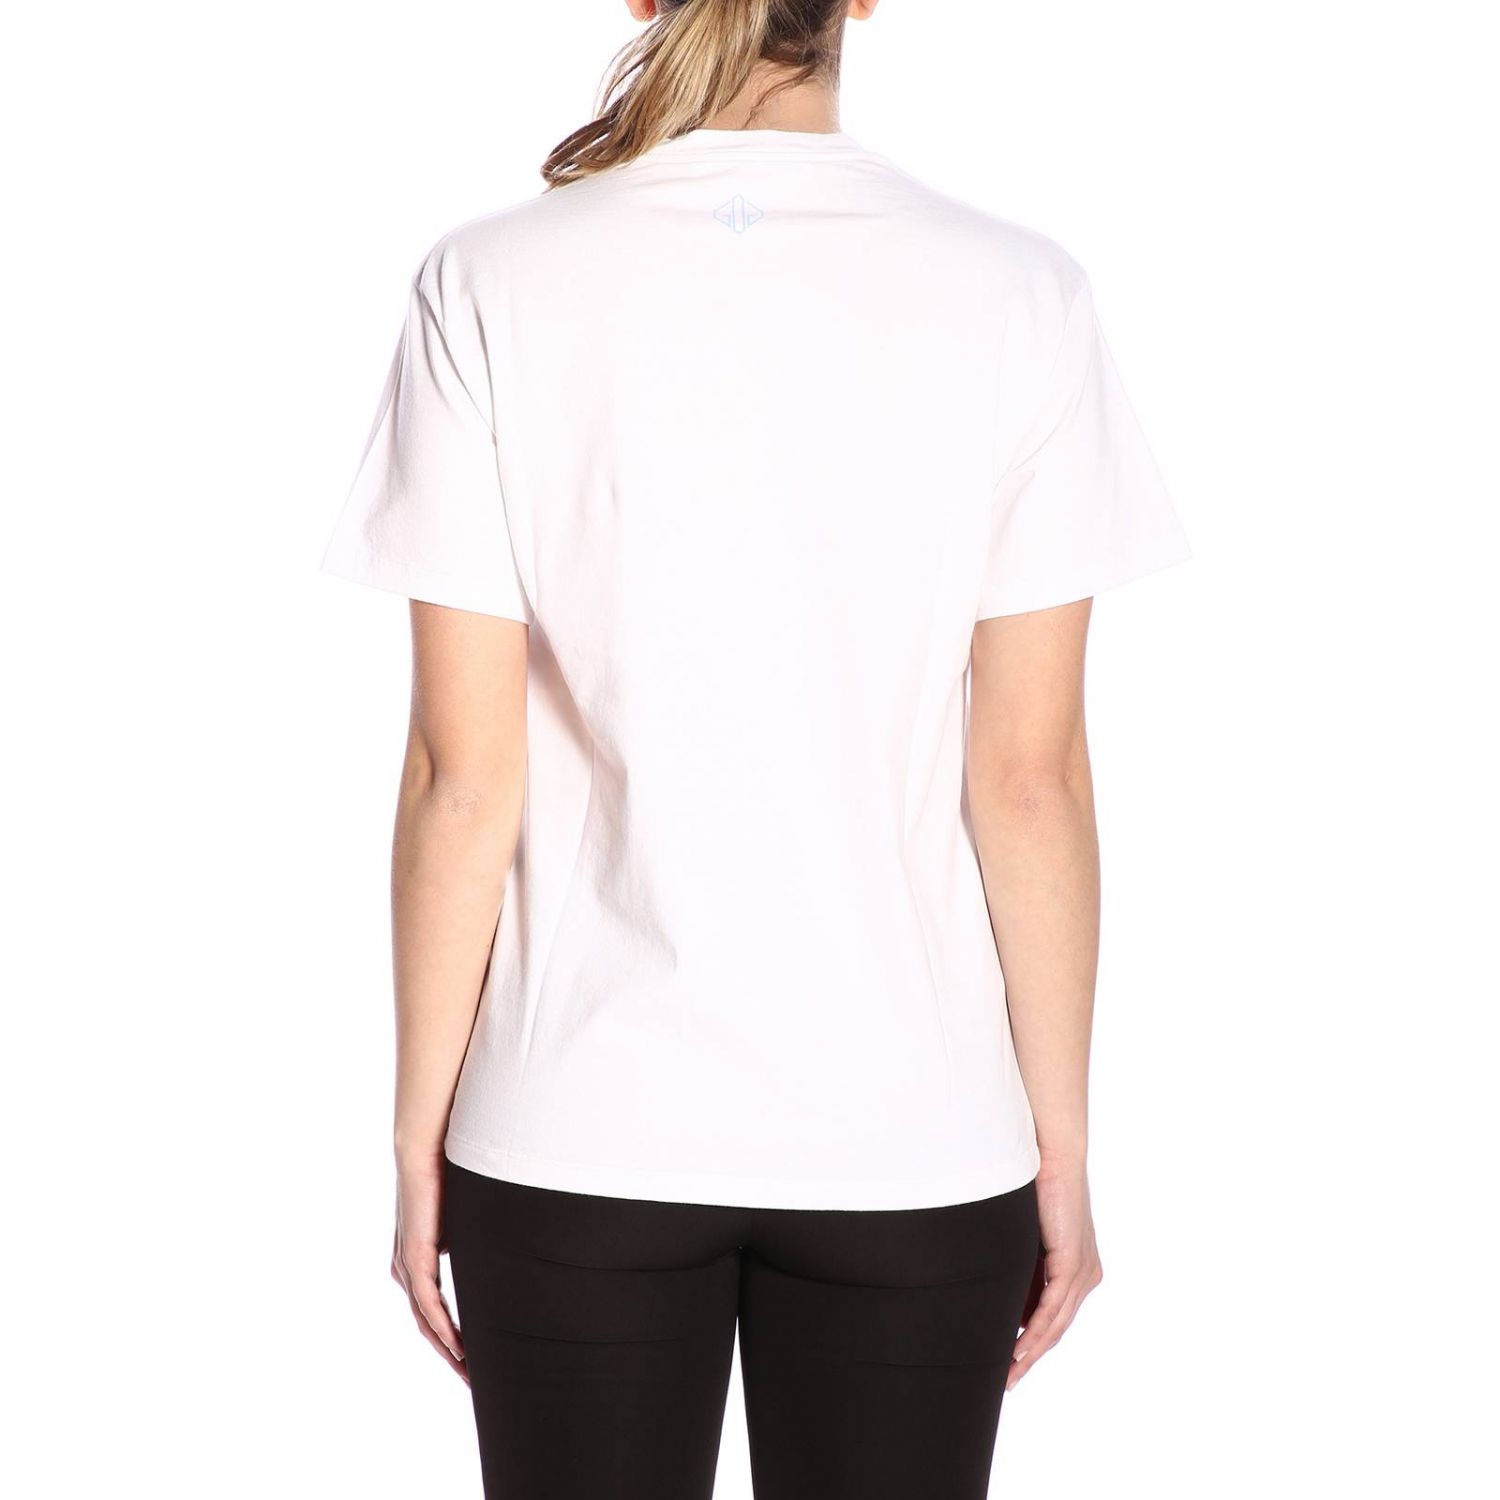 Golden Goose Outlet: T-shirt women - White | T-Shirt Golden Goose ...